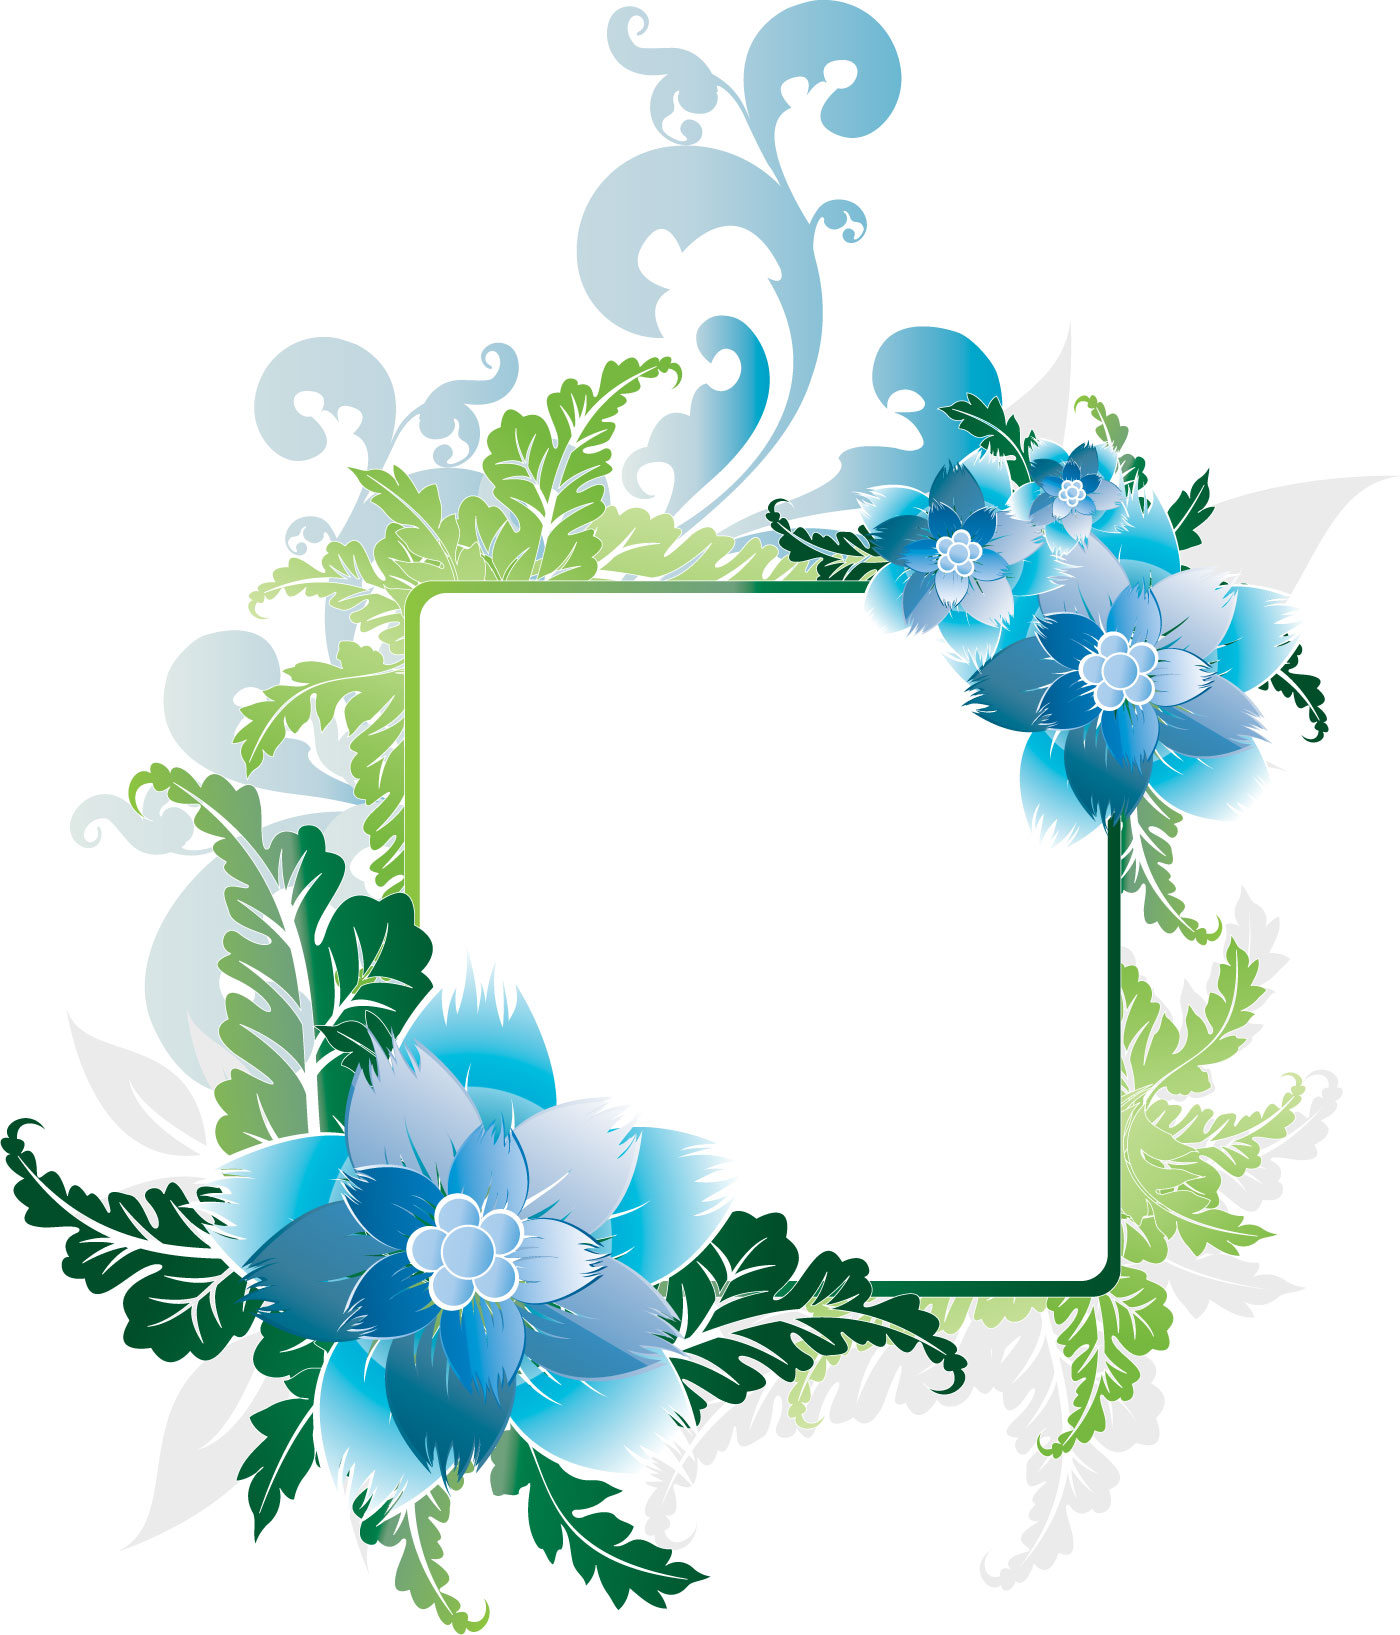 青い花のイラスト フリー素材 No 256 青 水色 葉